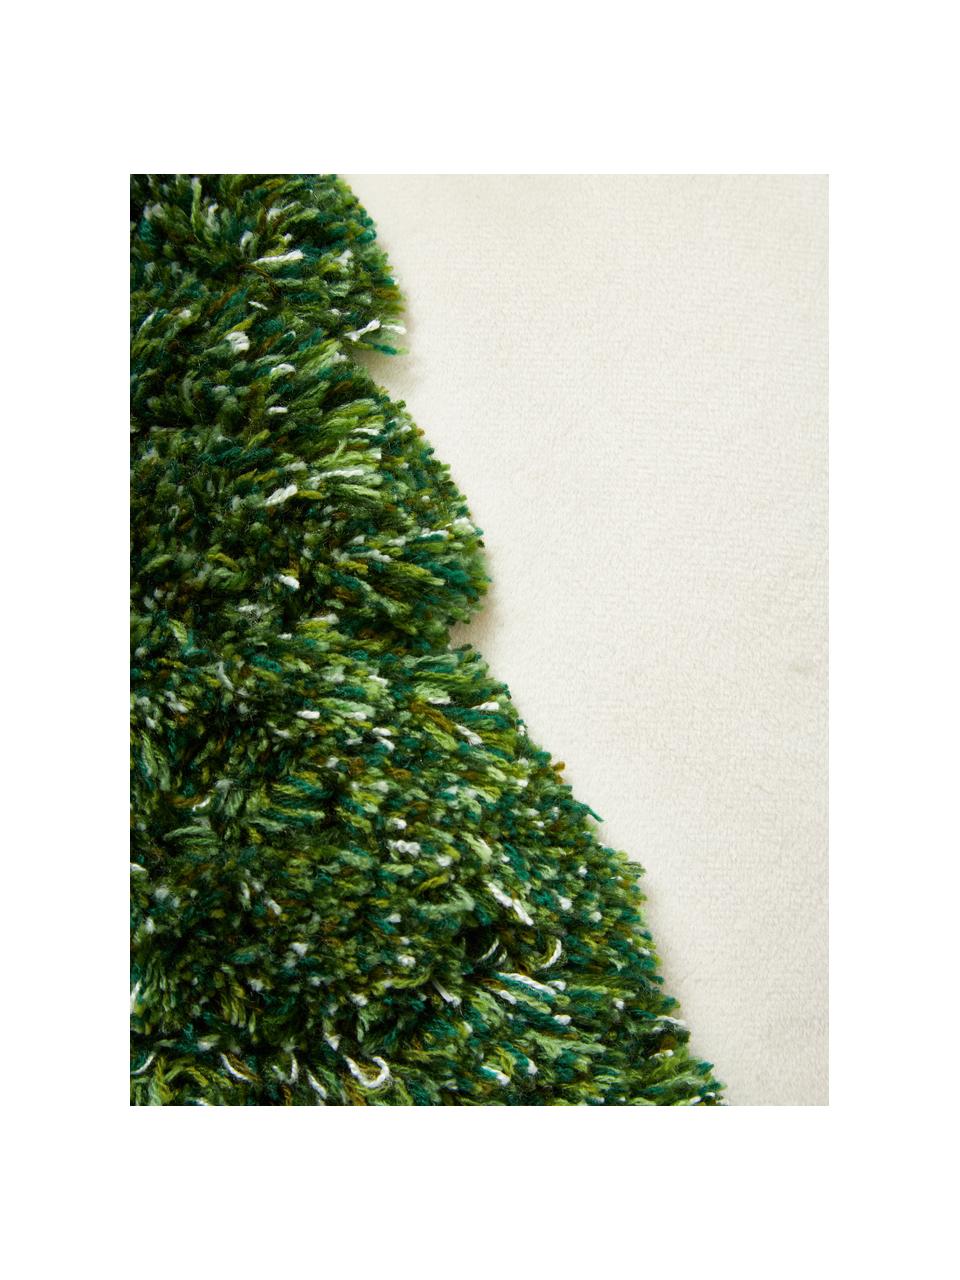 Poduszka z aksamitu Tree, Tapicerka: aksamit (100% poliester), Biały, zielony, S 30 x D 30 cm